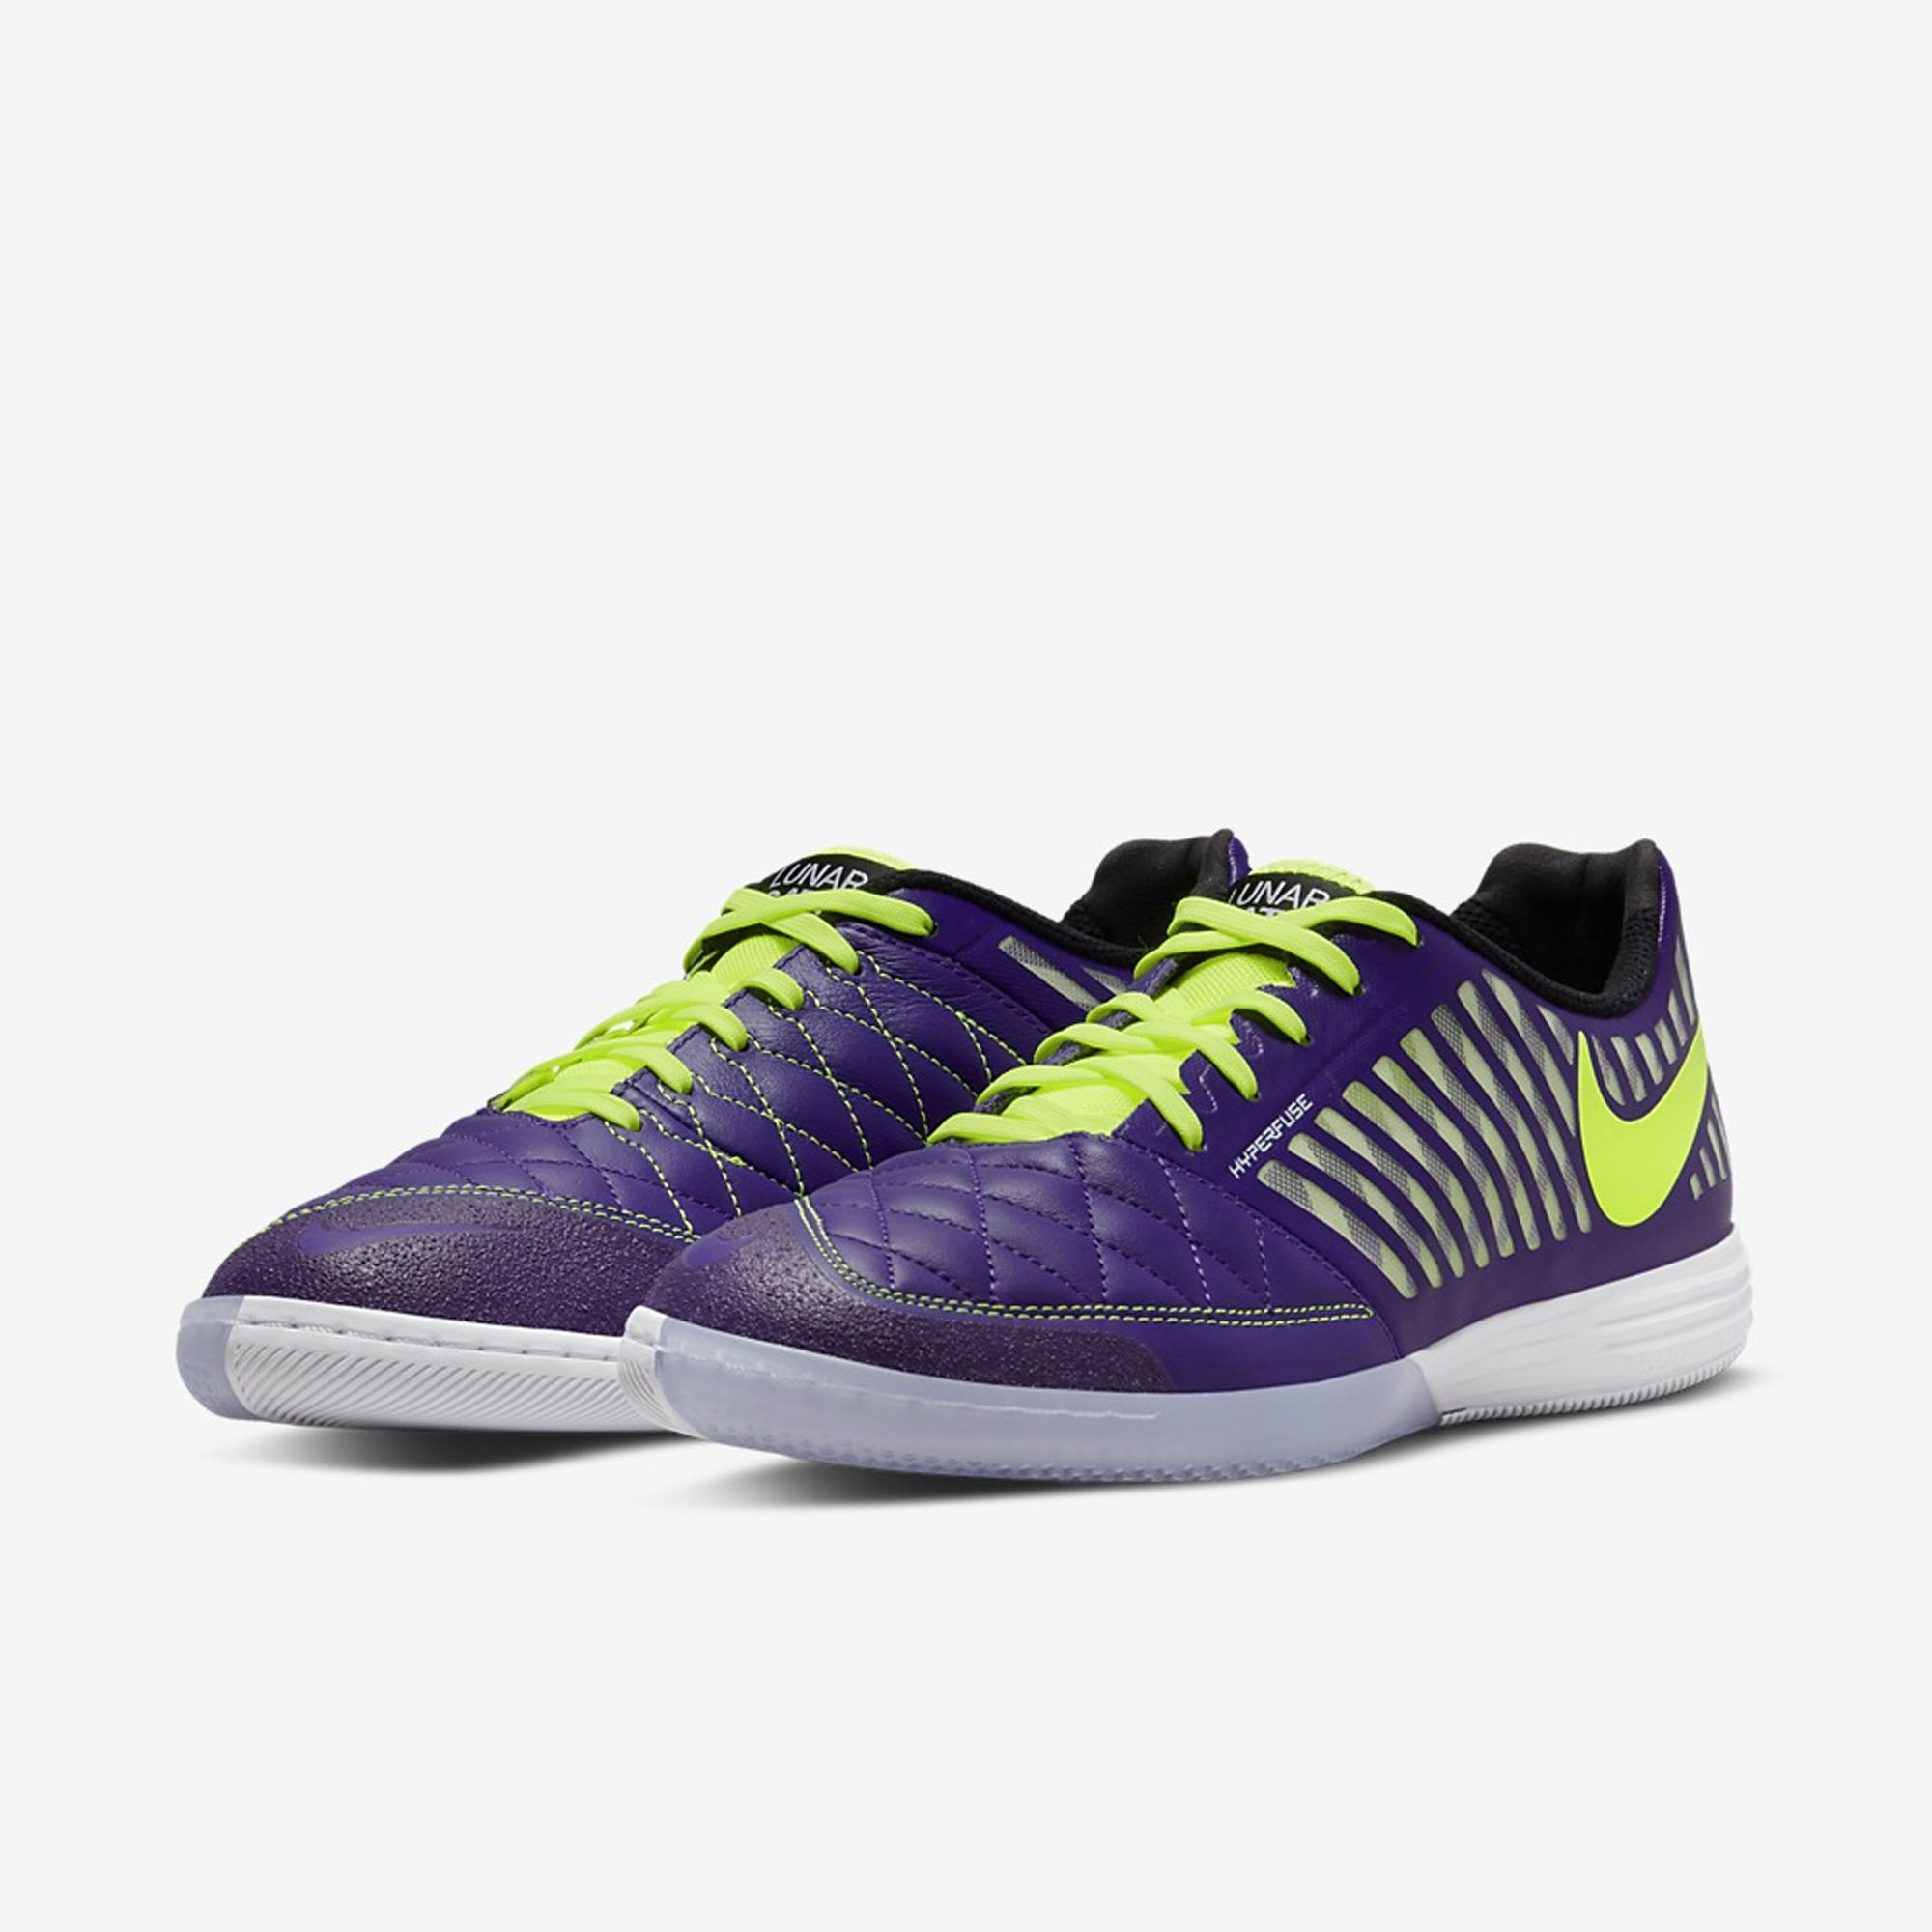 stefanssoccer.com:Nike Lunar II Indoor Soccer Shoes - Electro Purple / Black / White / Volt